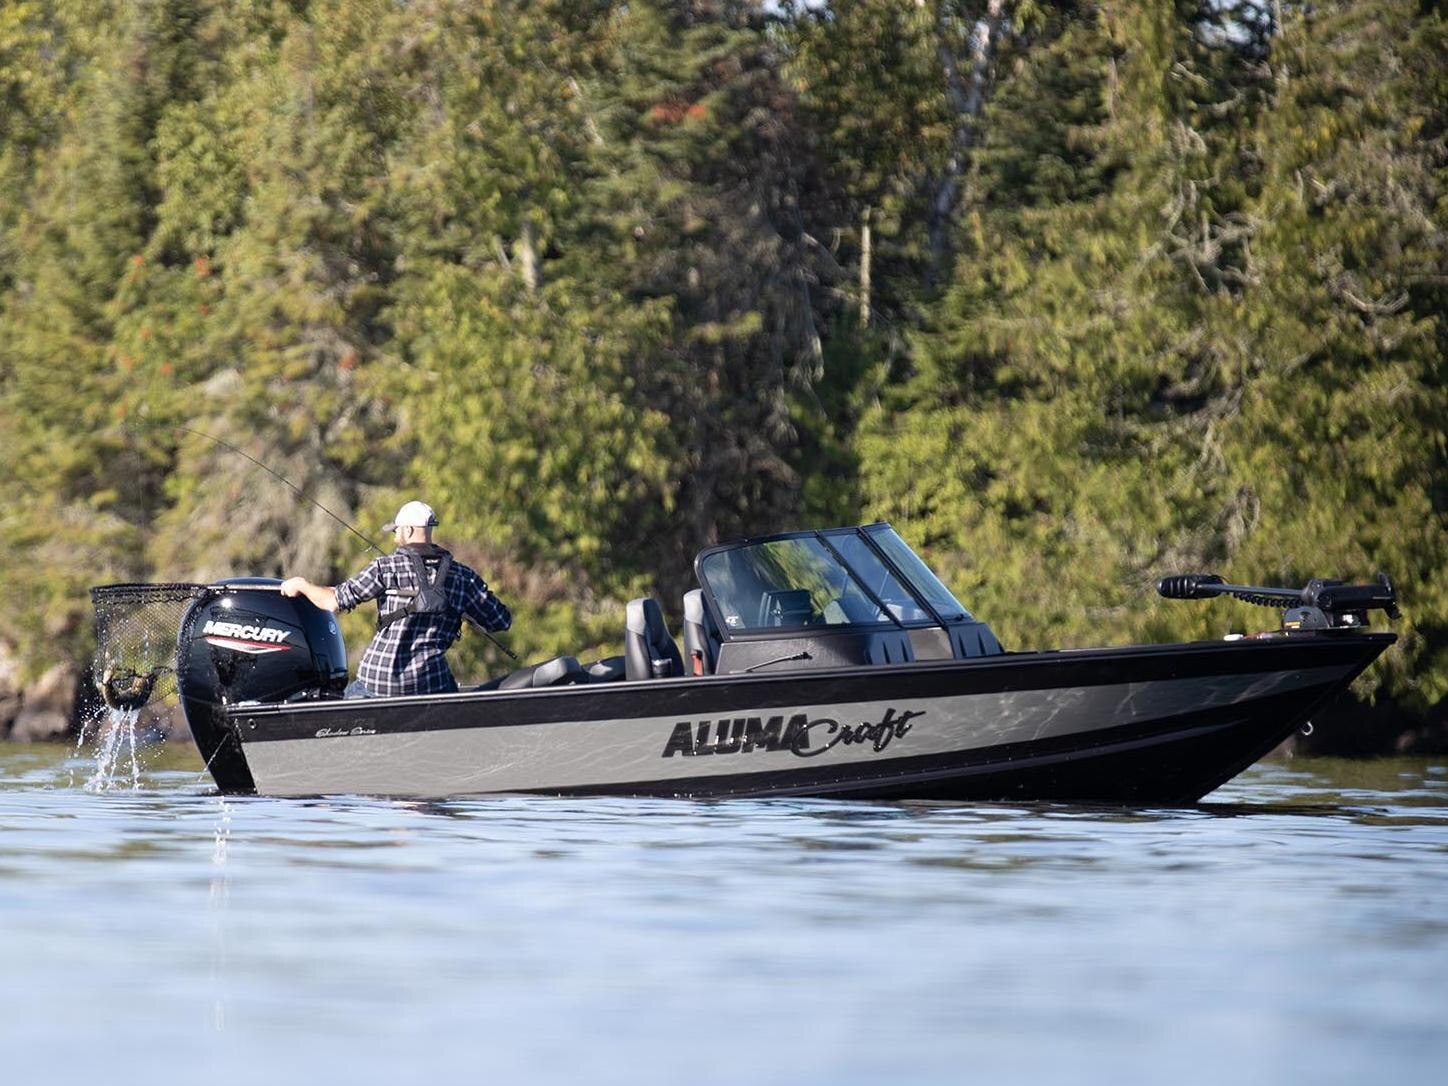 Homme pêchant avec un bateau d'alumacraft sur l'eau calme